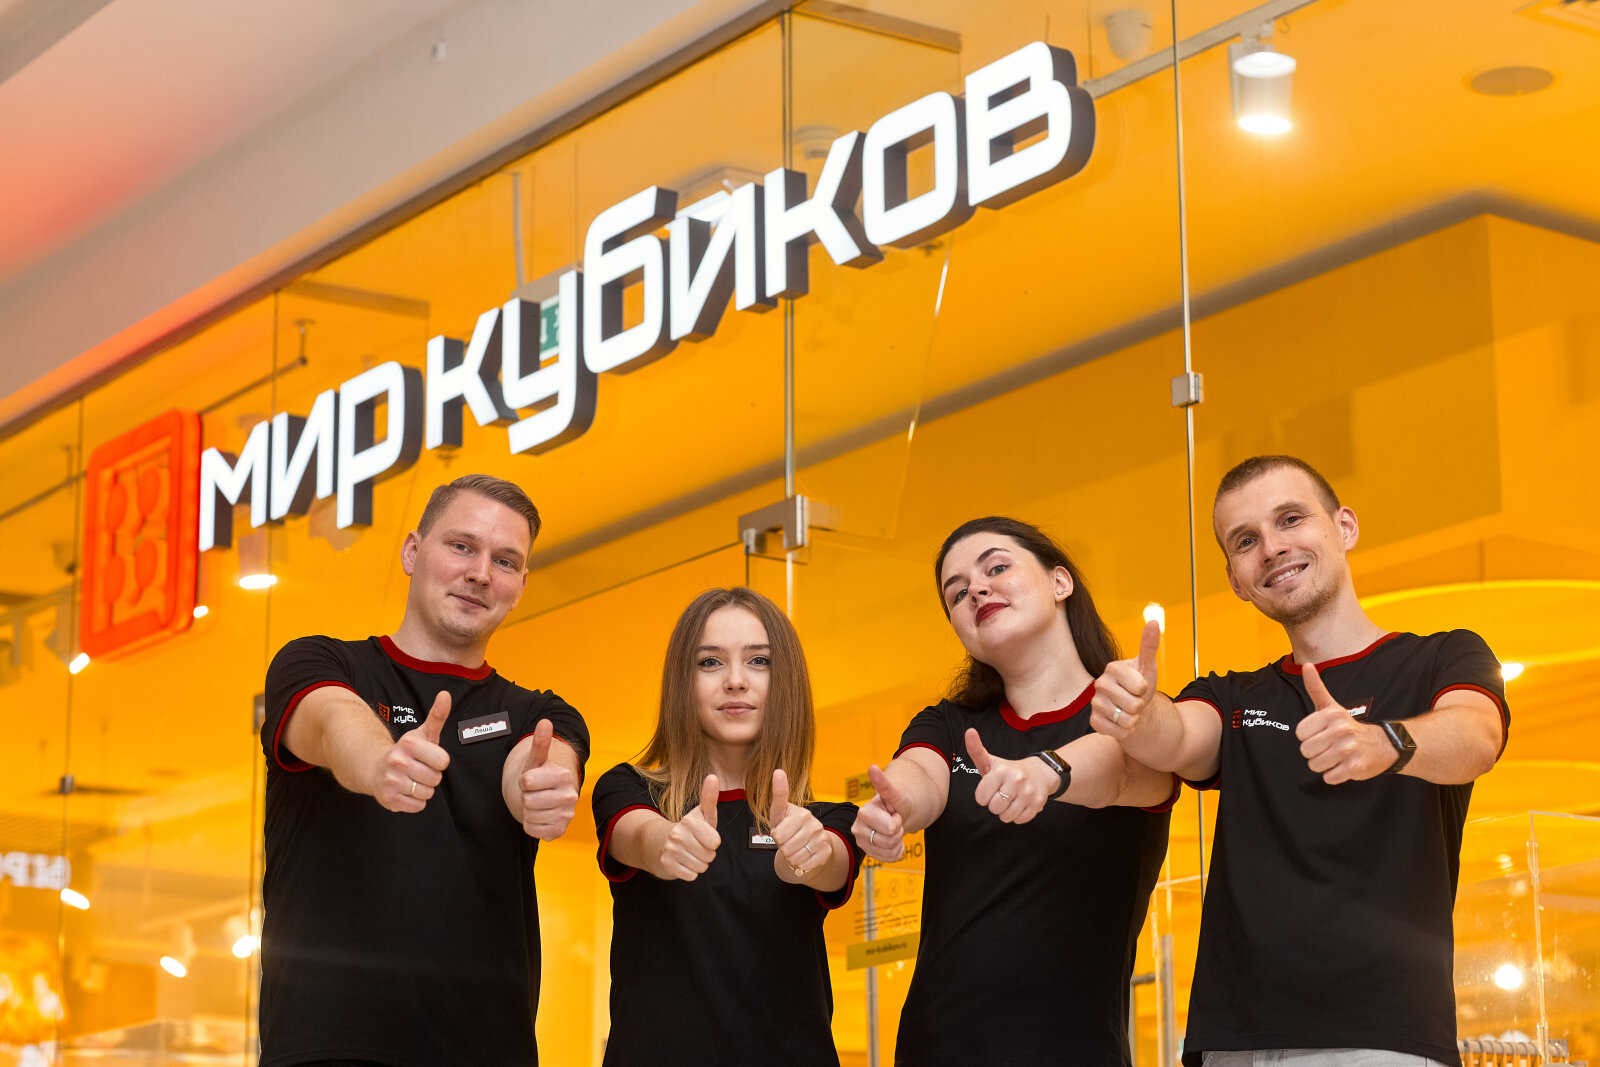 Мария Голенкова (INVENTIVE RETAIL GROUP): «Мы хотим дать покупателям возможность выбора»